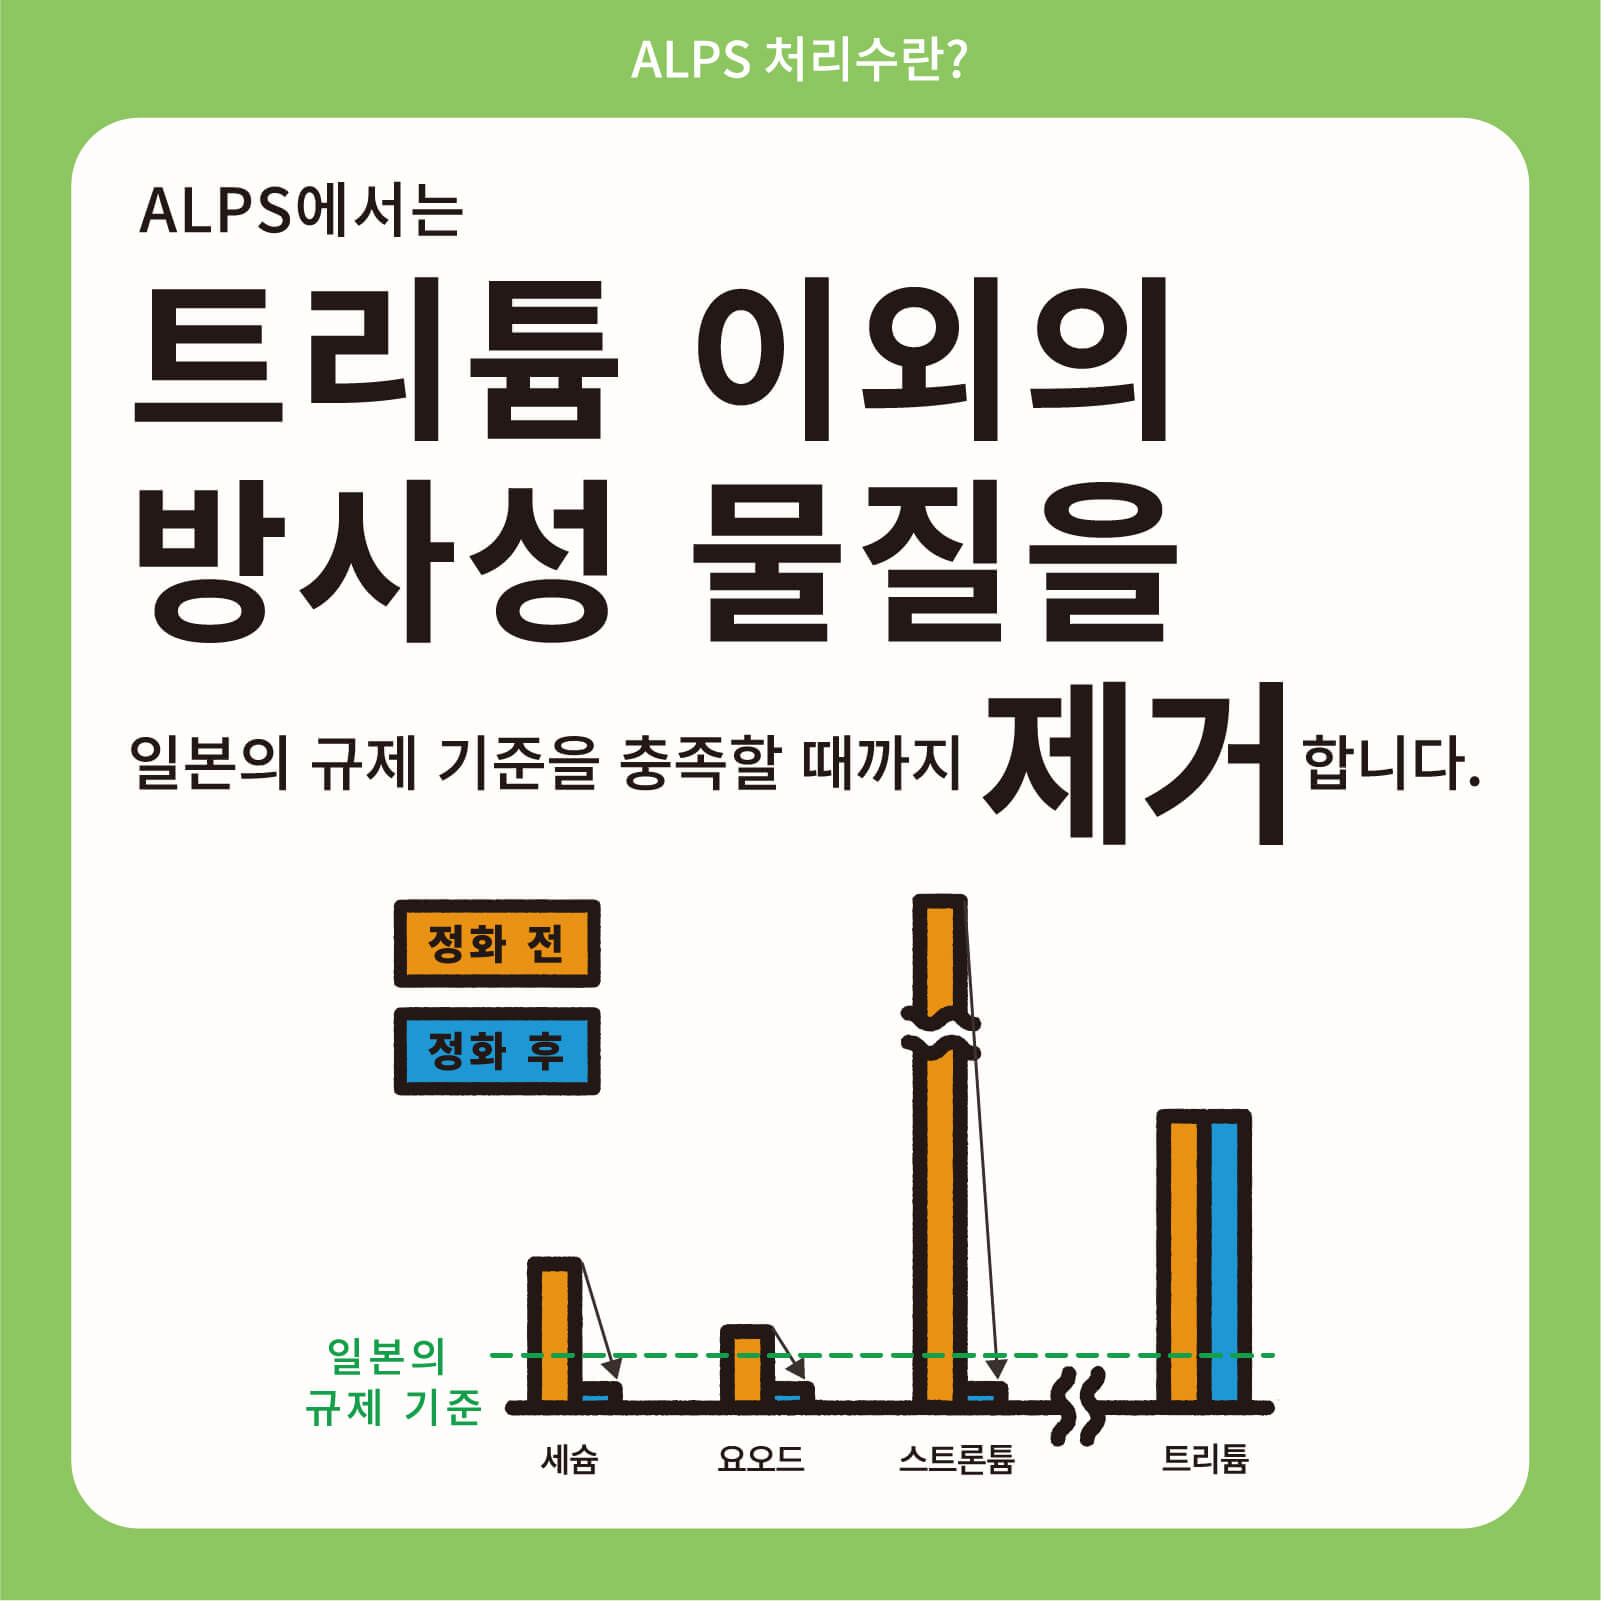 ALPS에서는 트리튬 이외의 방사성 물질을 일본의 규제 기준을 충족할 때까지 제거합니다.